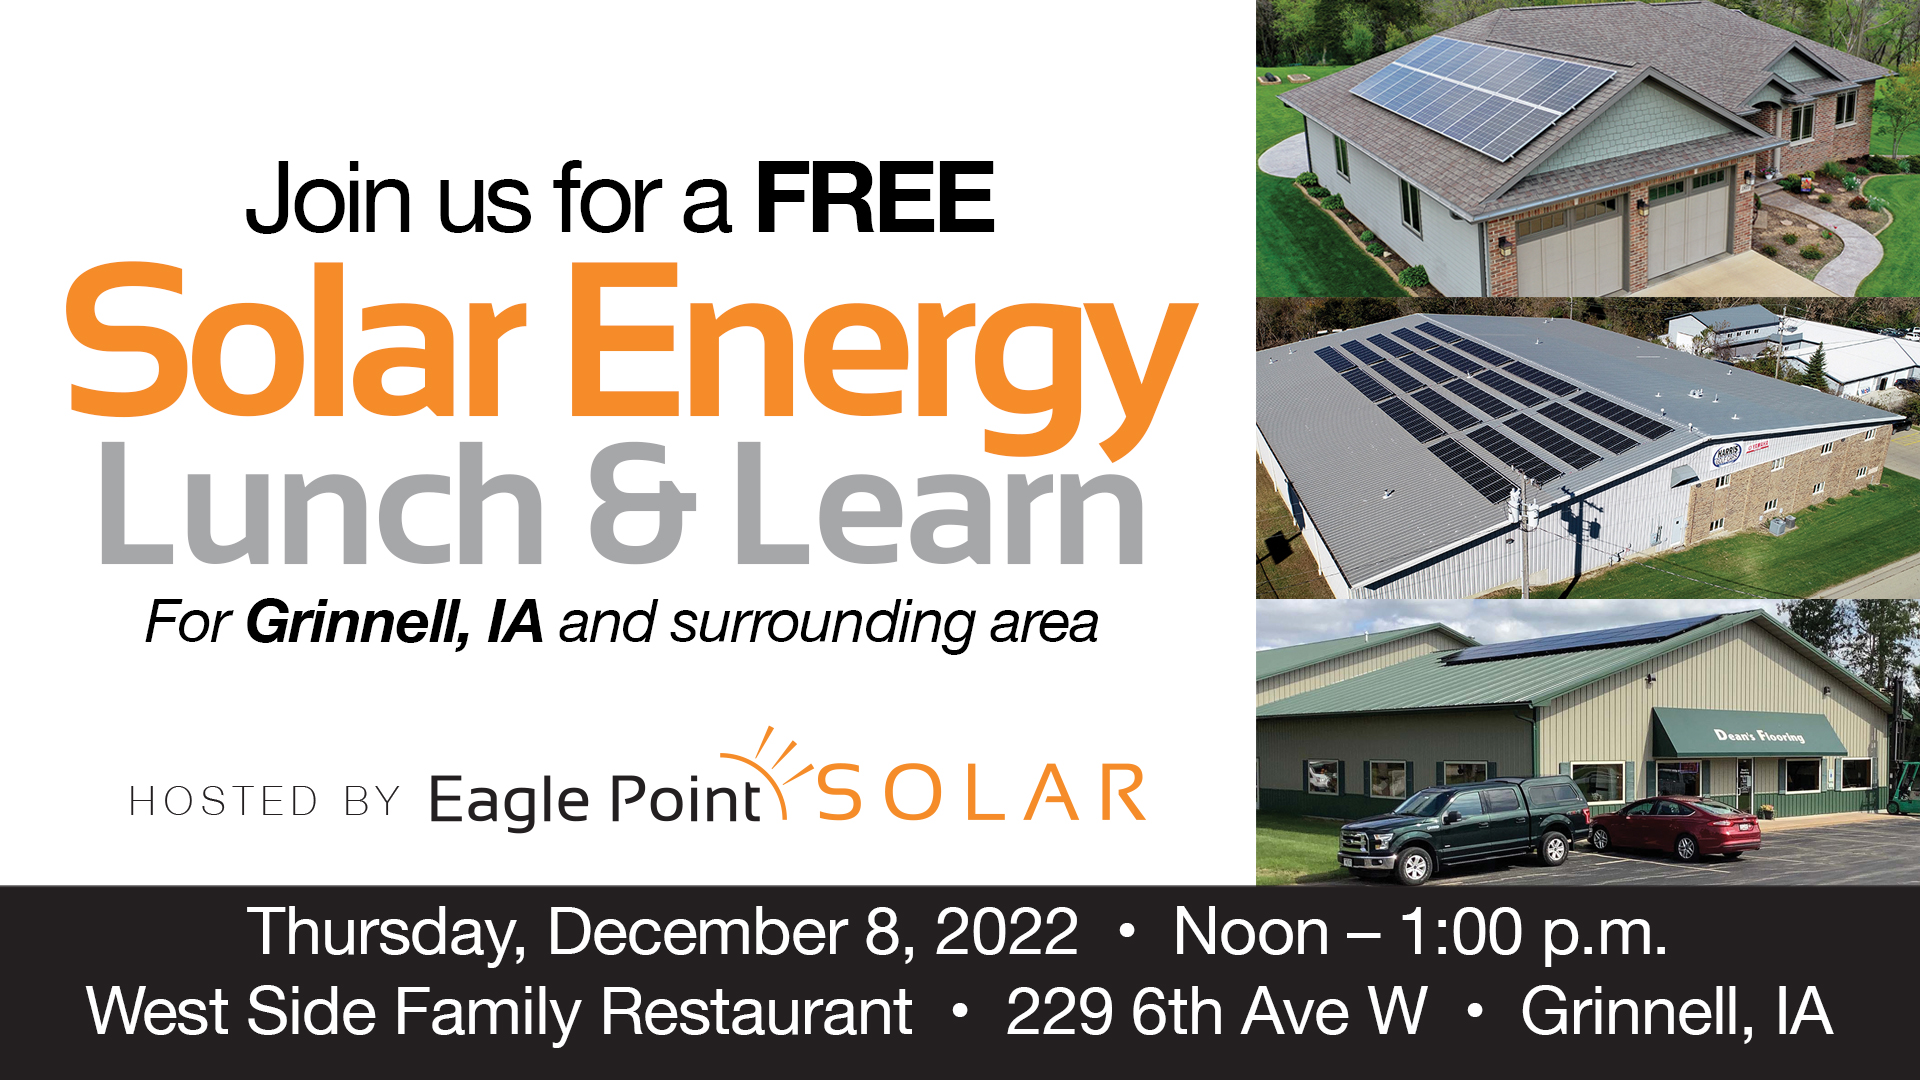 solar-energy-lunch-learn-grinnell-ia-eagle-point-solar